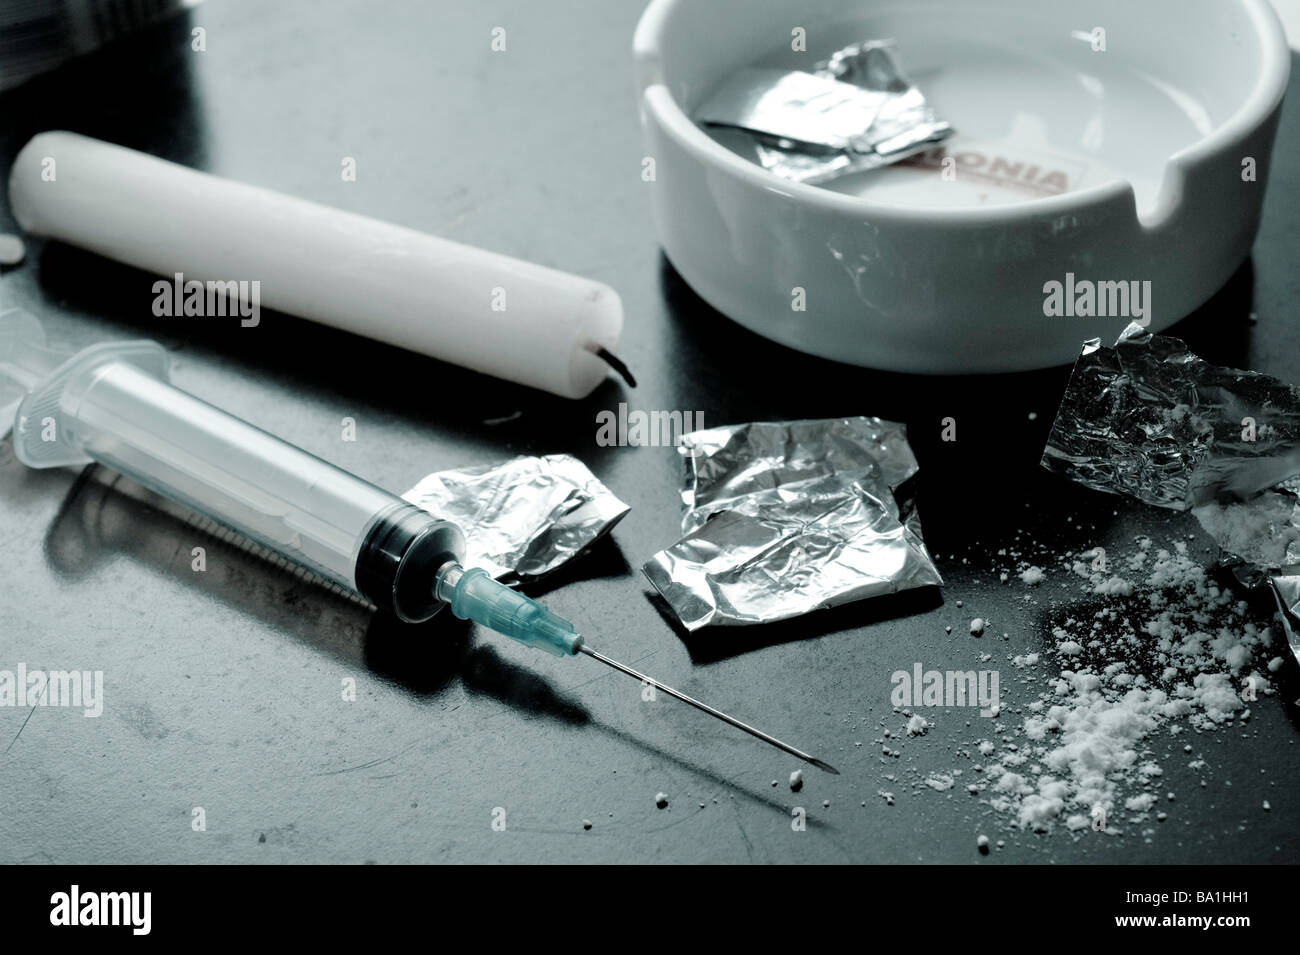 Concepto del uso indebido de drogas heroína disparar herramientas y medicamentos Foto de stock